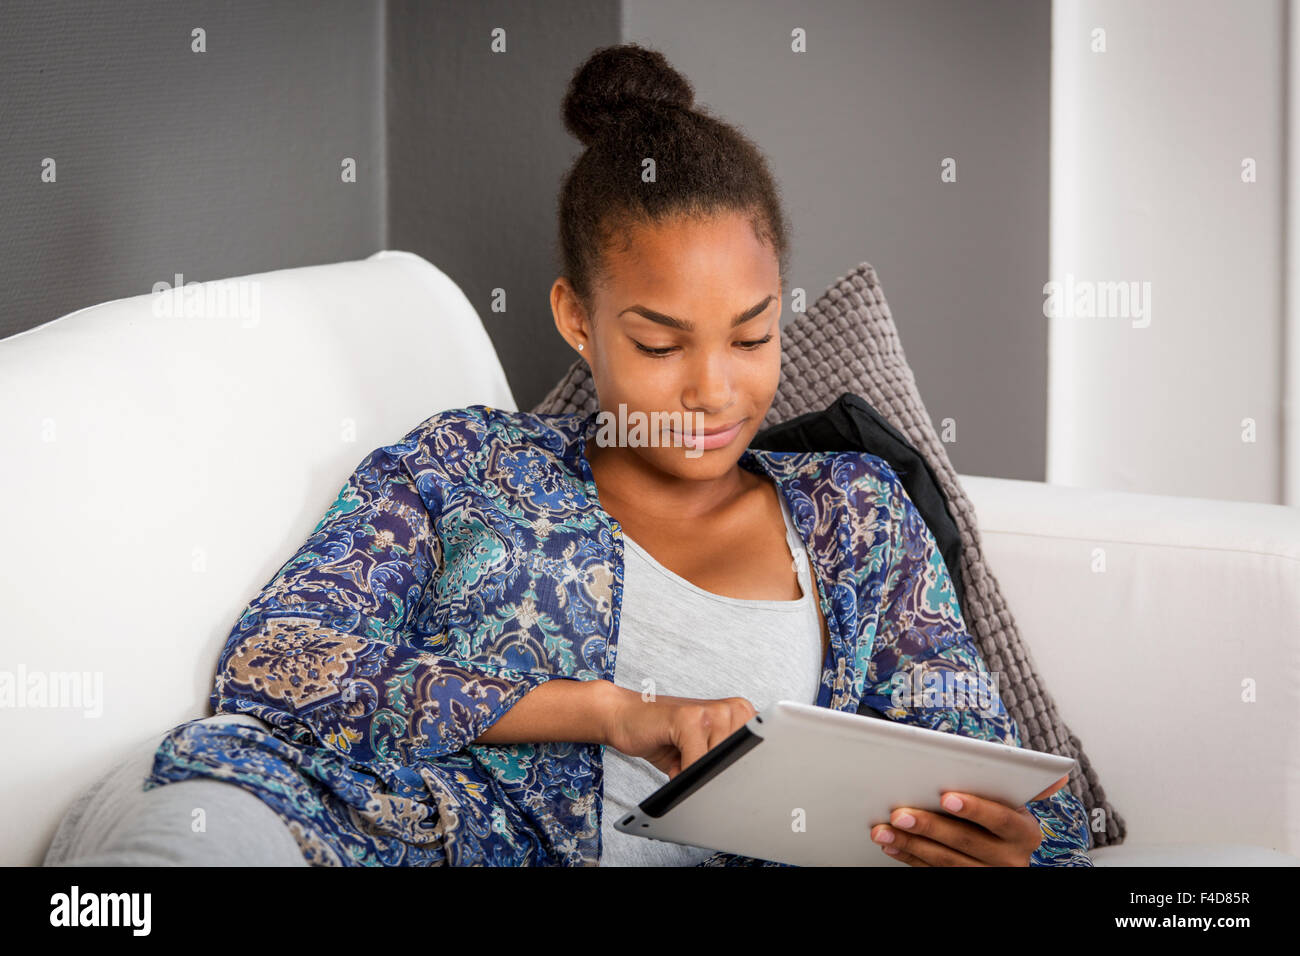 Fille dans un canapé avec une tablette électronique dans ses mains. Banque D'Images